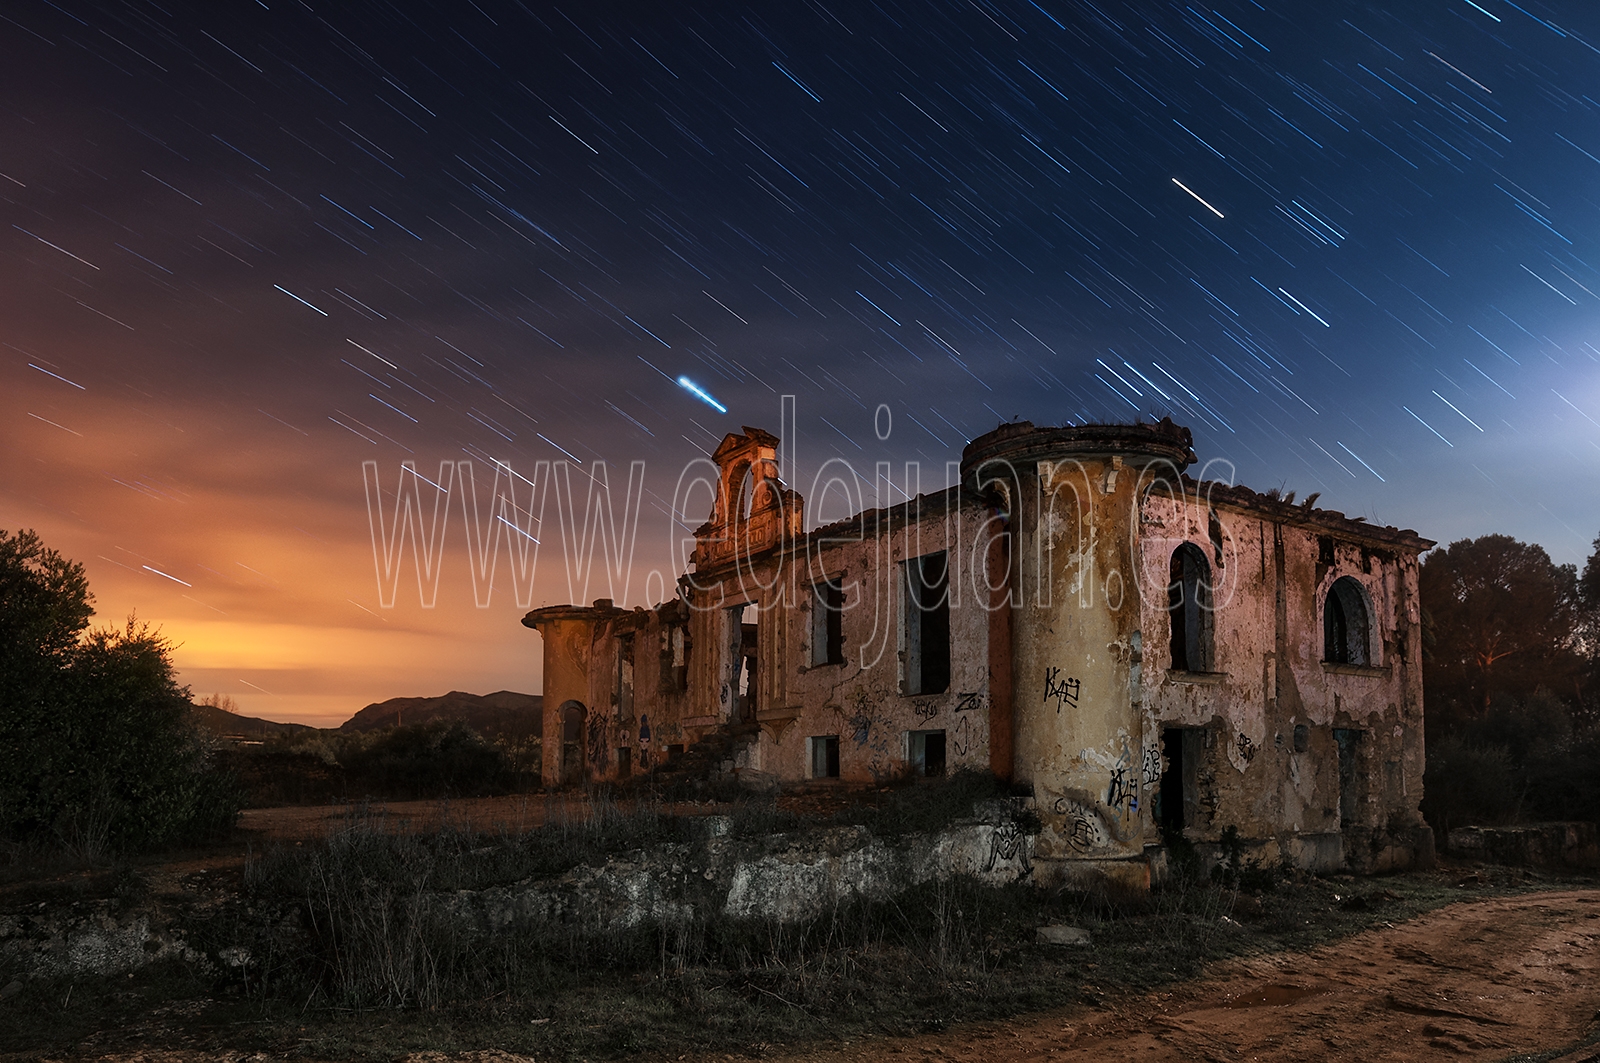 Fotografía nocturna de una villa en ruinas, Villa Apolo o casa Rúa, Ronda, Málaga